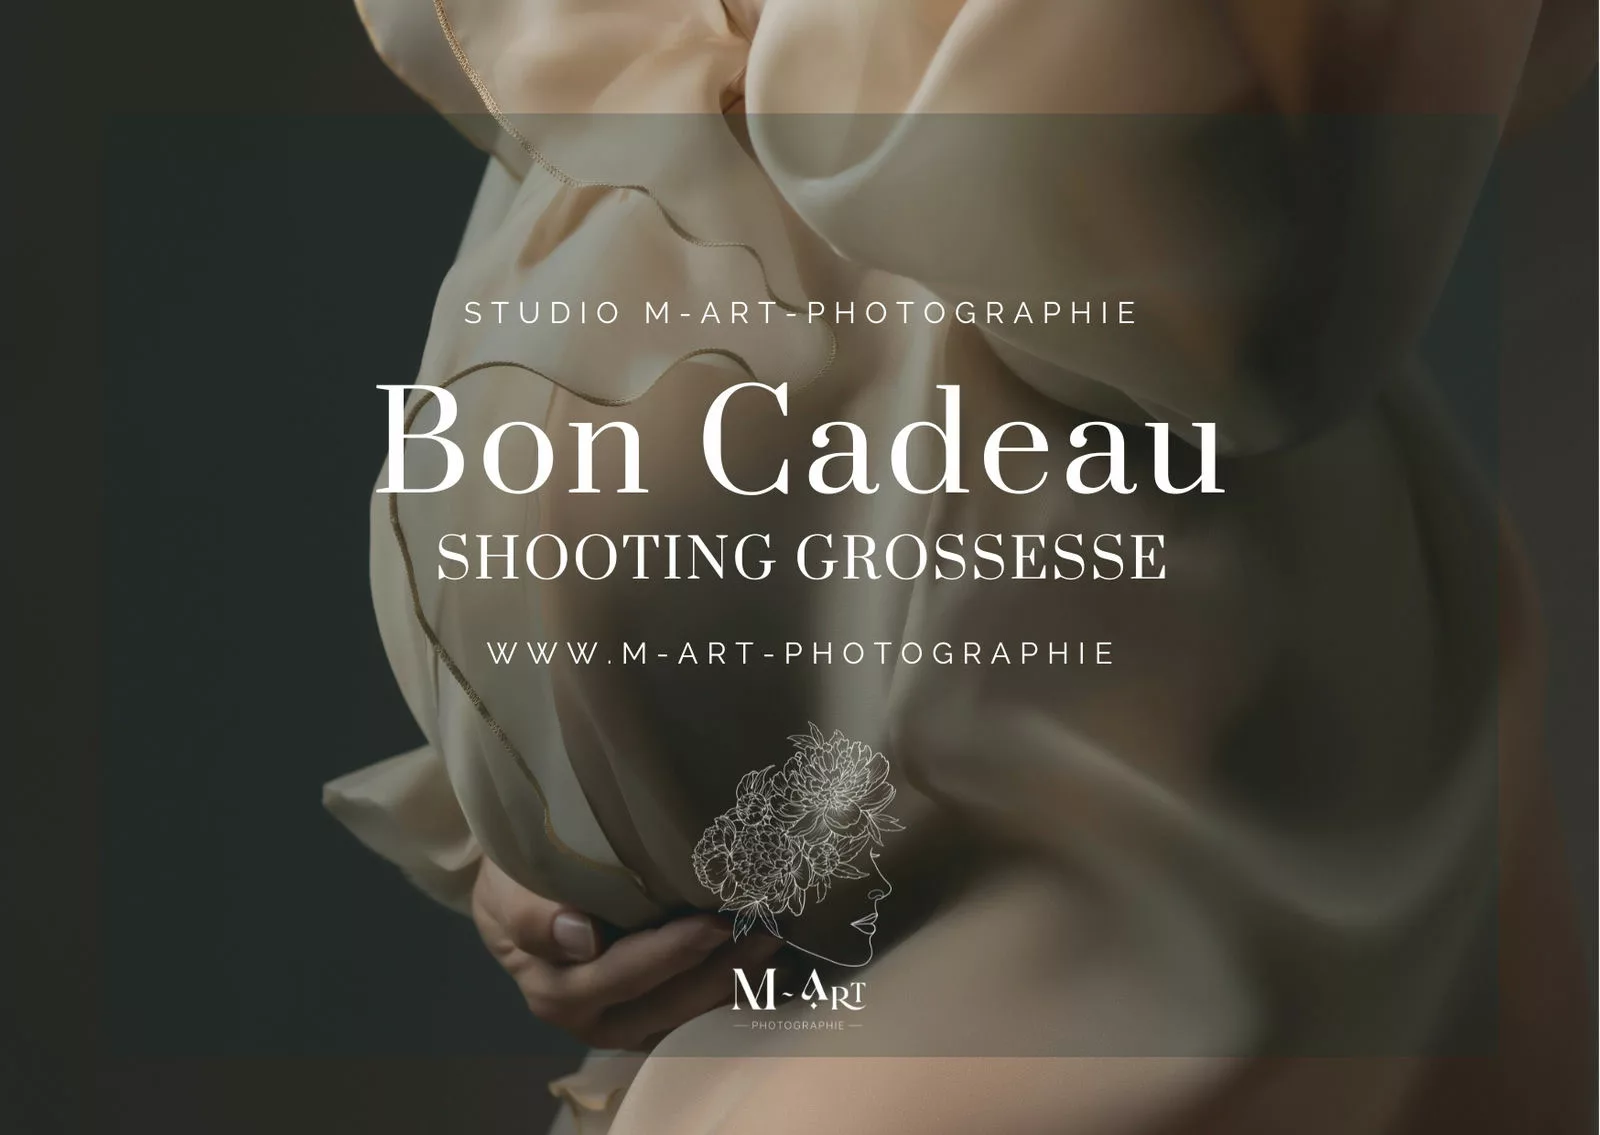 Bon cadeau photographie grossesse / femme enceinte Lyon - Chavanoz - Rhône-Alpes. Studio avec tenues et accessoires. M-art-photographie.